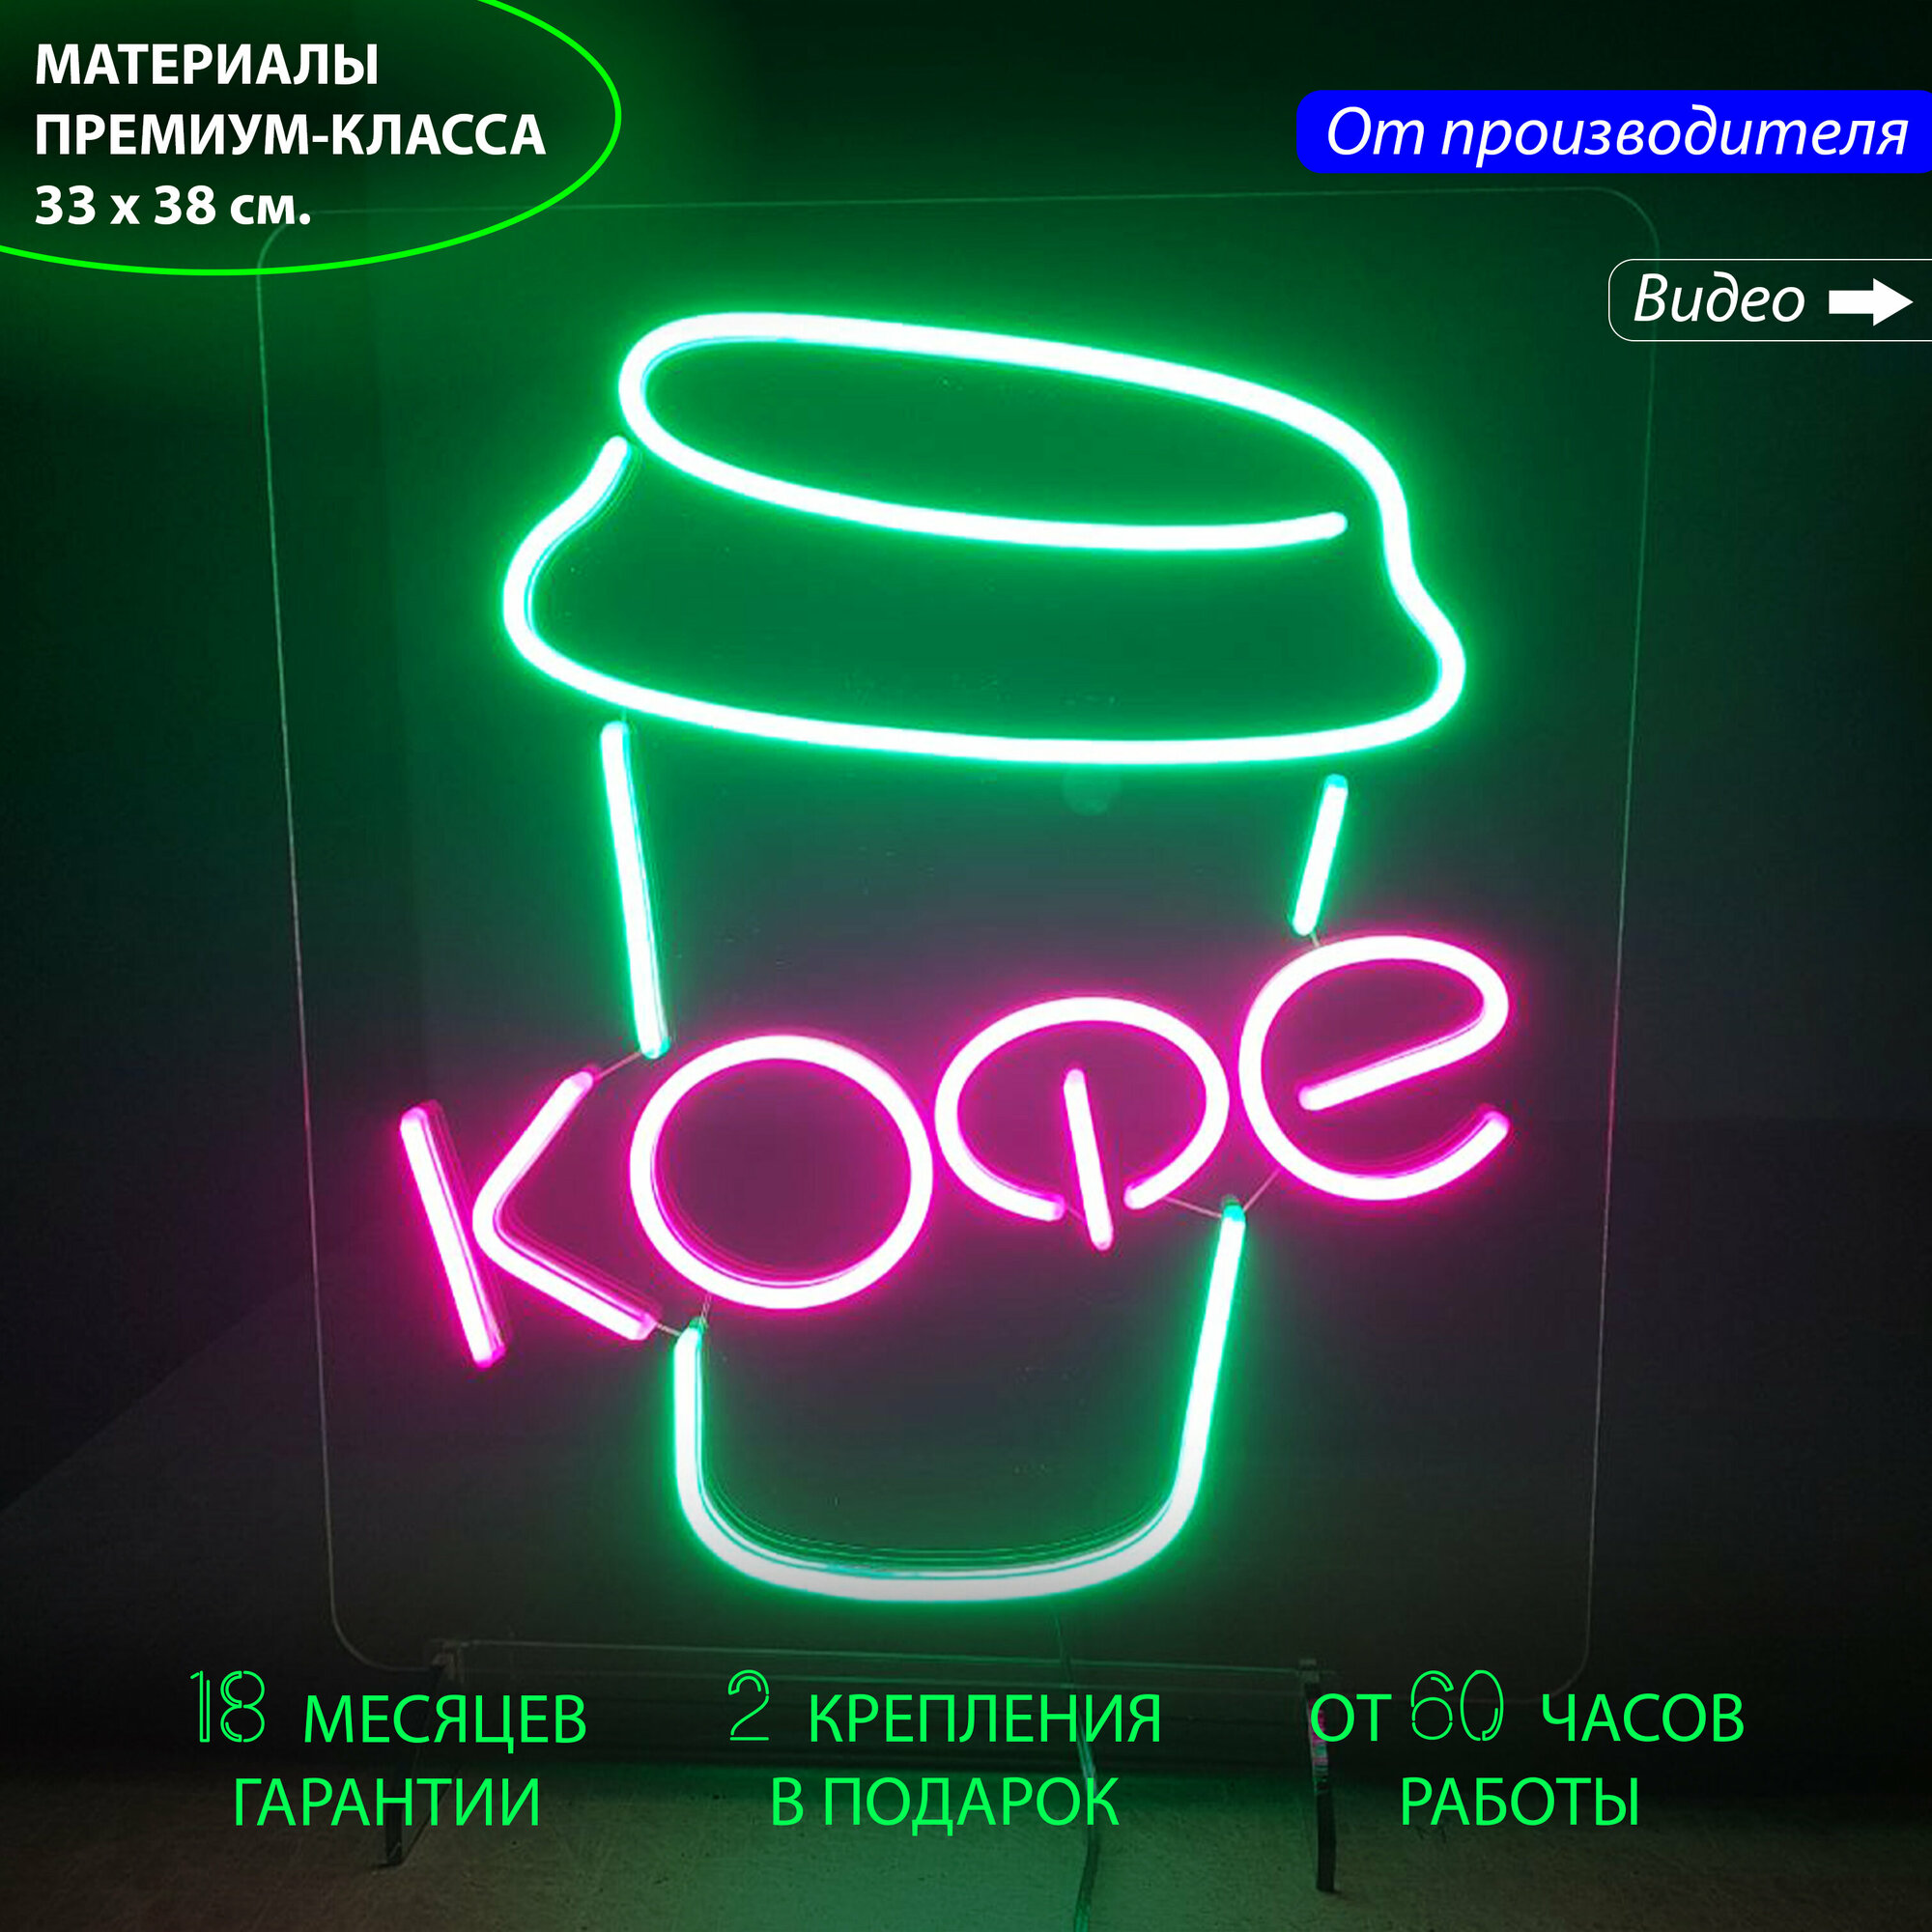 Неоновая вывеска для кафе и кофейни с надписью "Кофе" и с зеленым стаканчиком для кофе, 33 х 38 см. / светильник из гибкого неона - фотография № 1